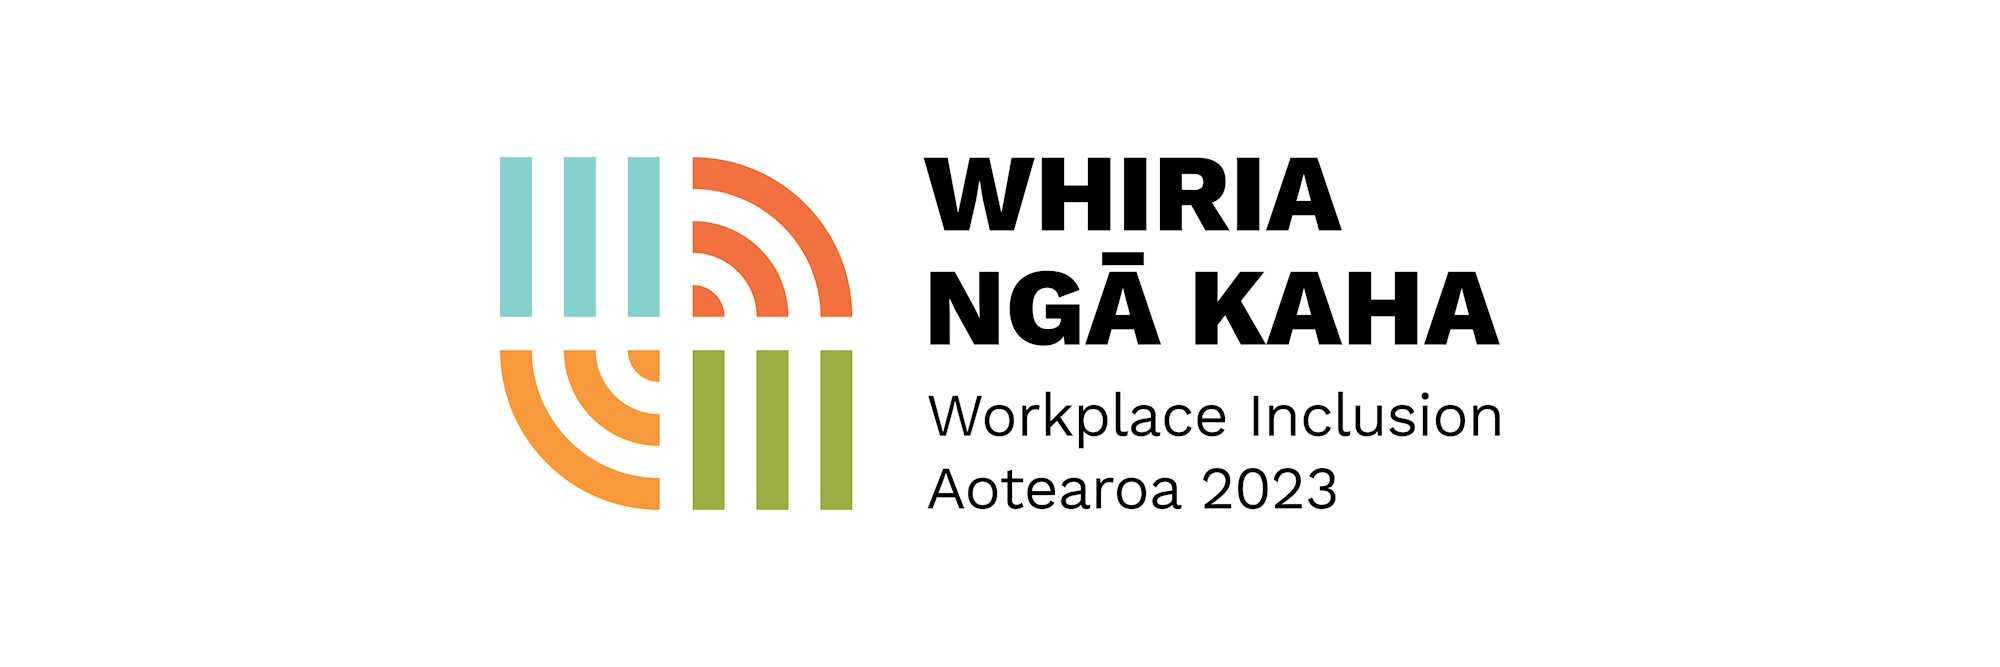 Whiria Ngā Kaha Workplace Inclusion Aotearoa 2023 logo